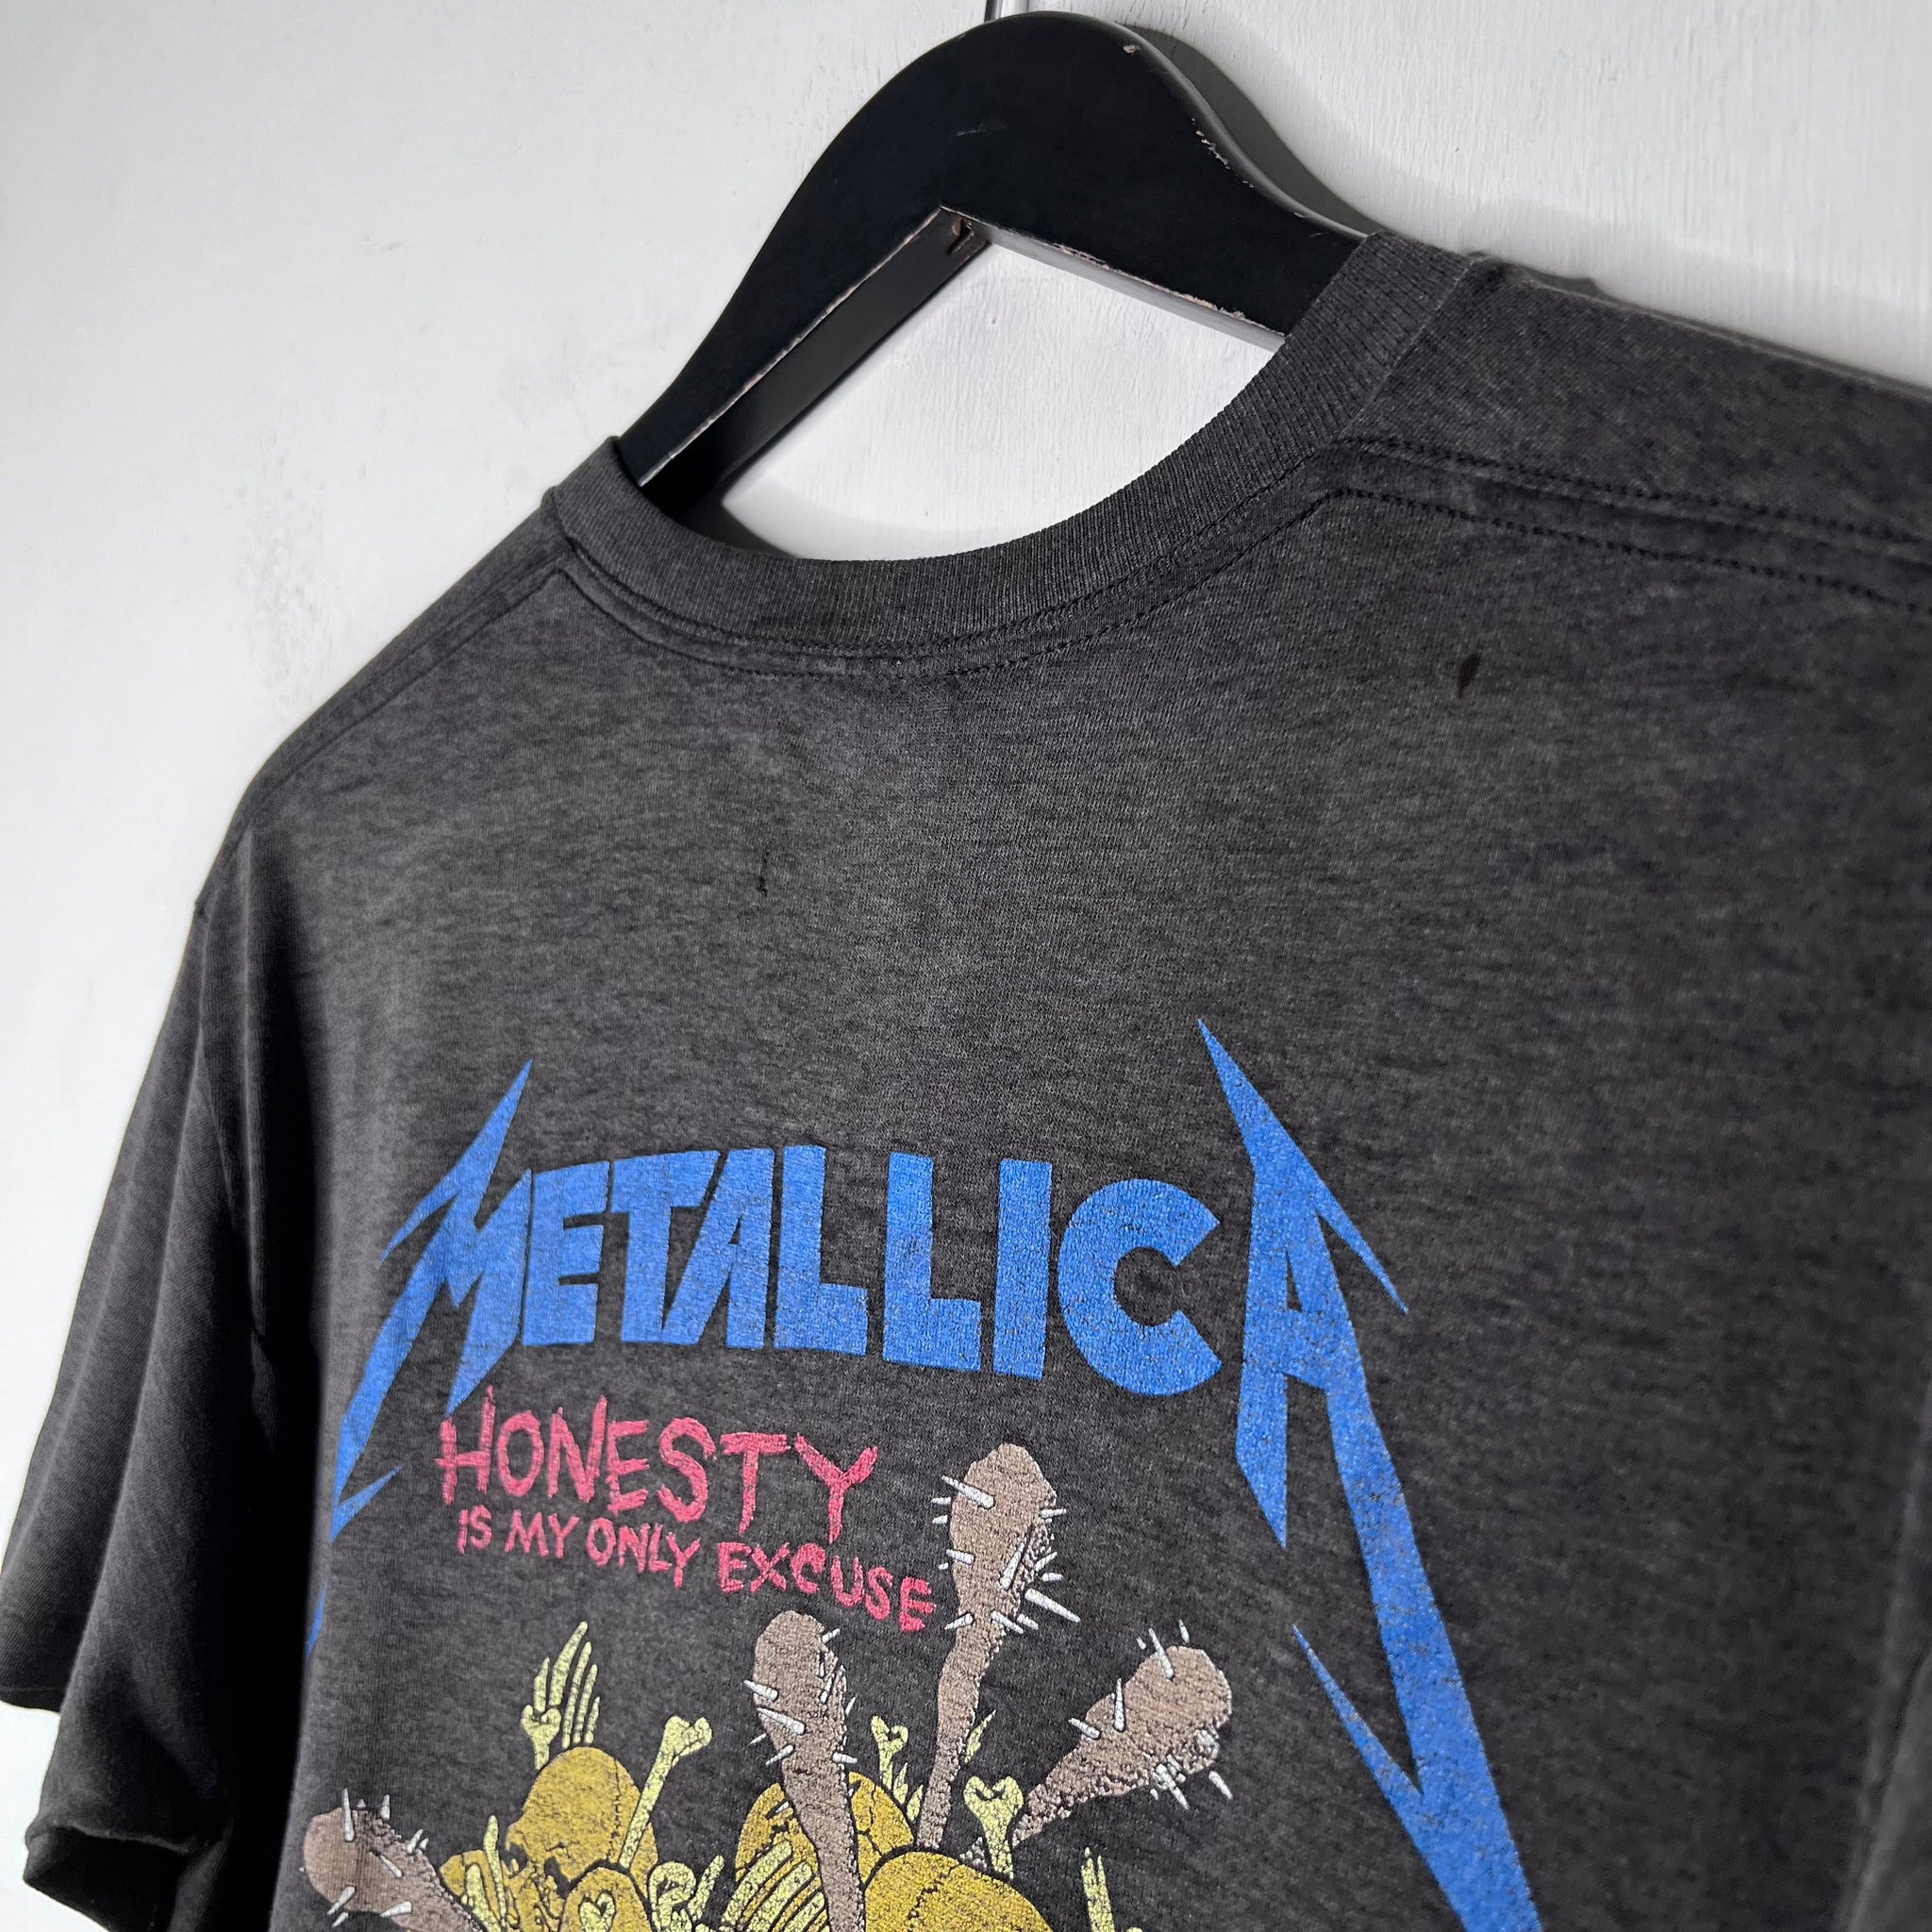 Metallica 'Damage Inc. Tour' - 1987